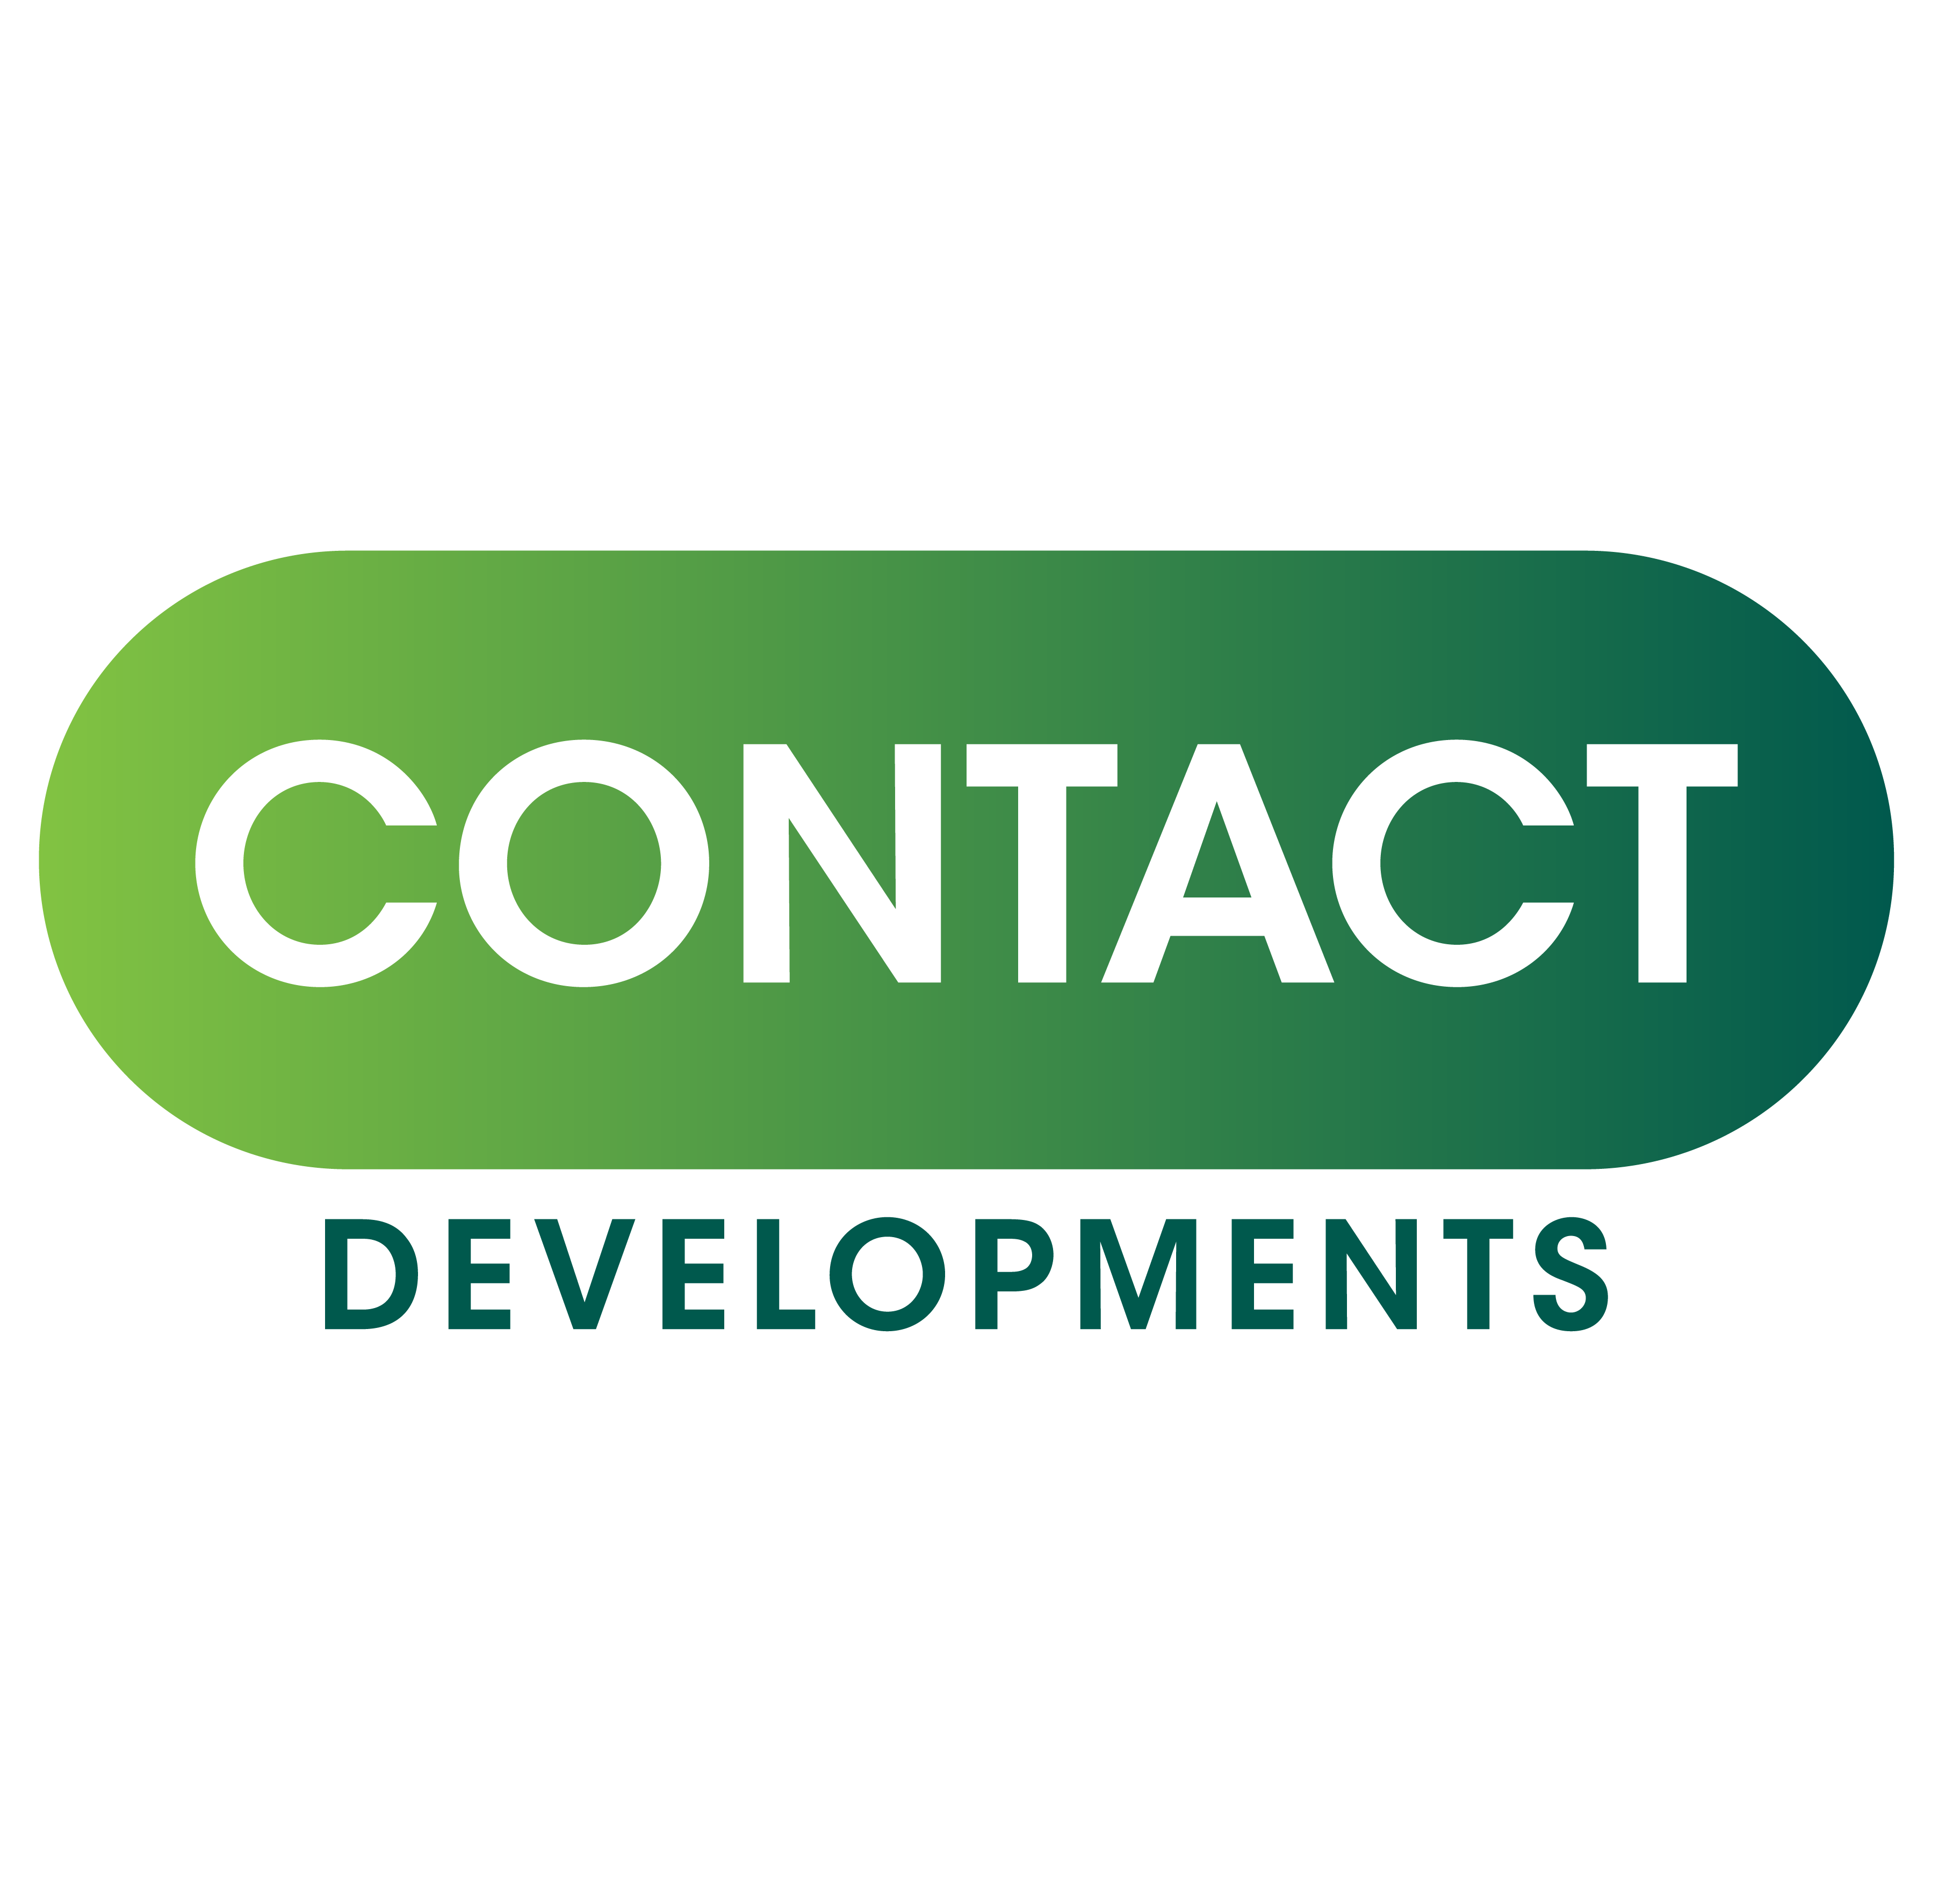 Contact Developer Company